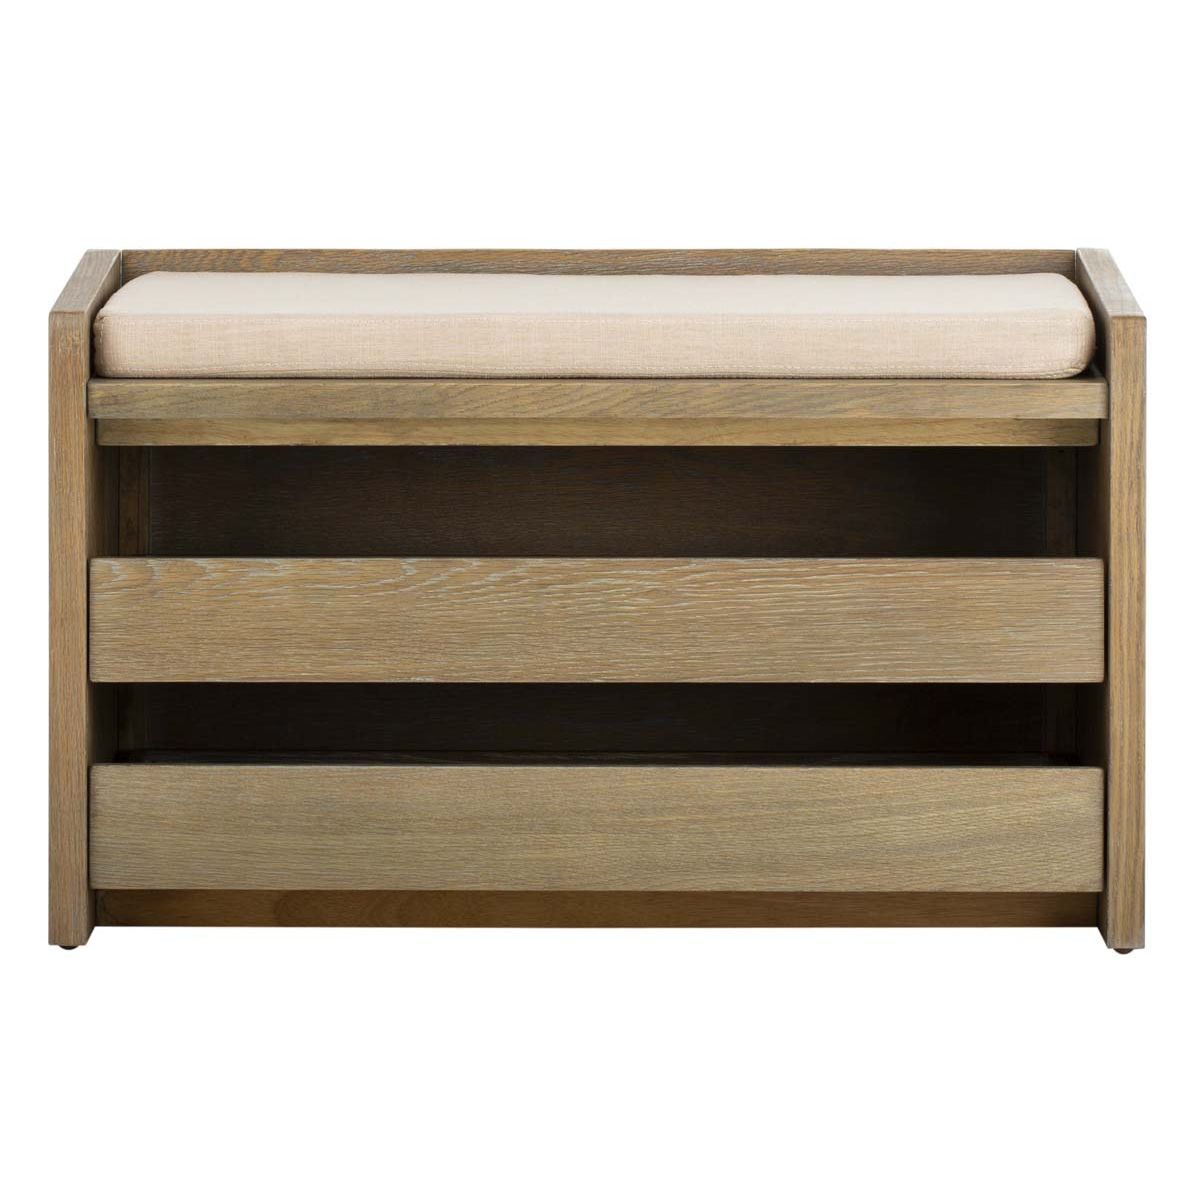 Safavieh Percy Storage Bench , BCH6400 - Rustic Oak/Beige Linen